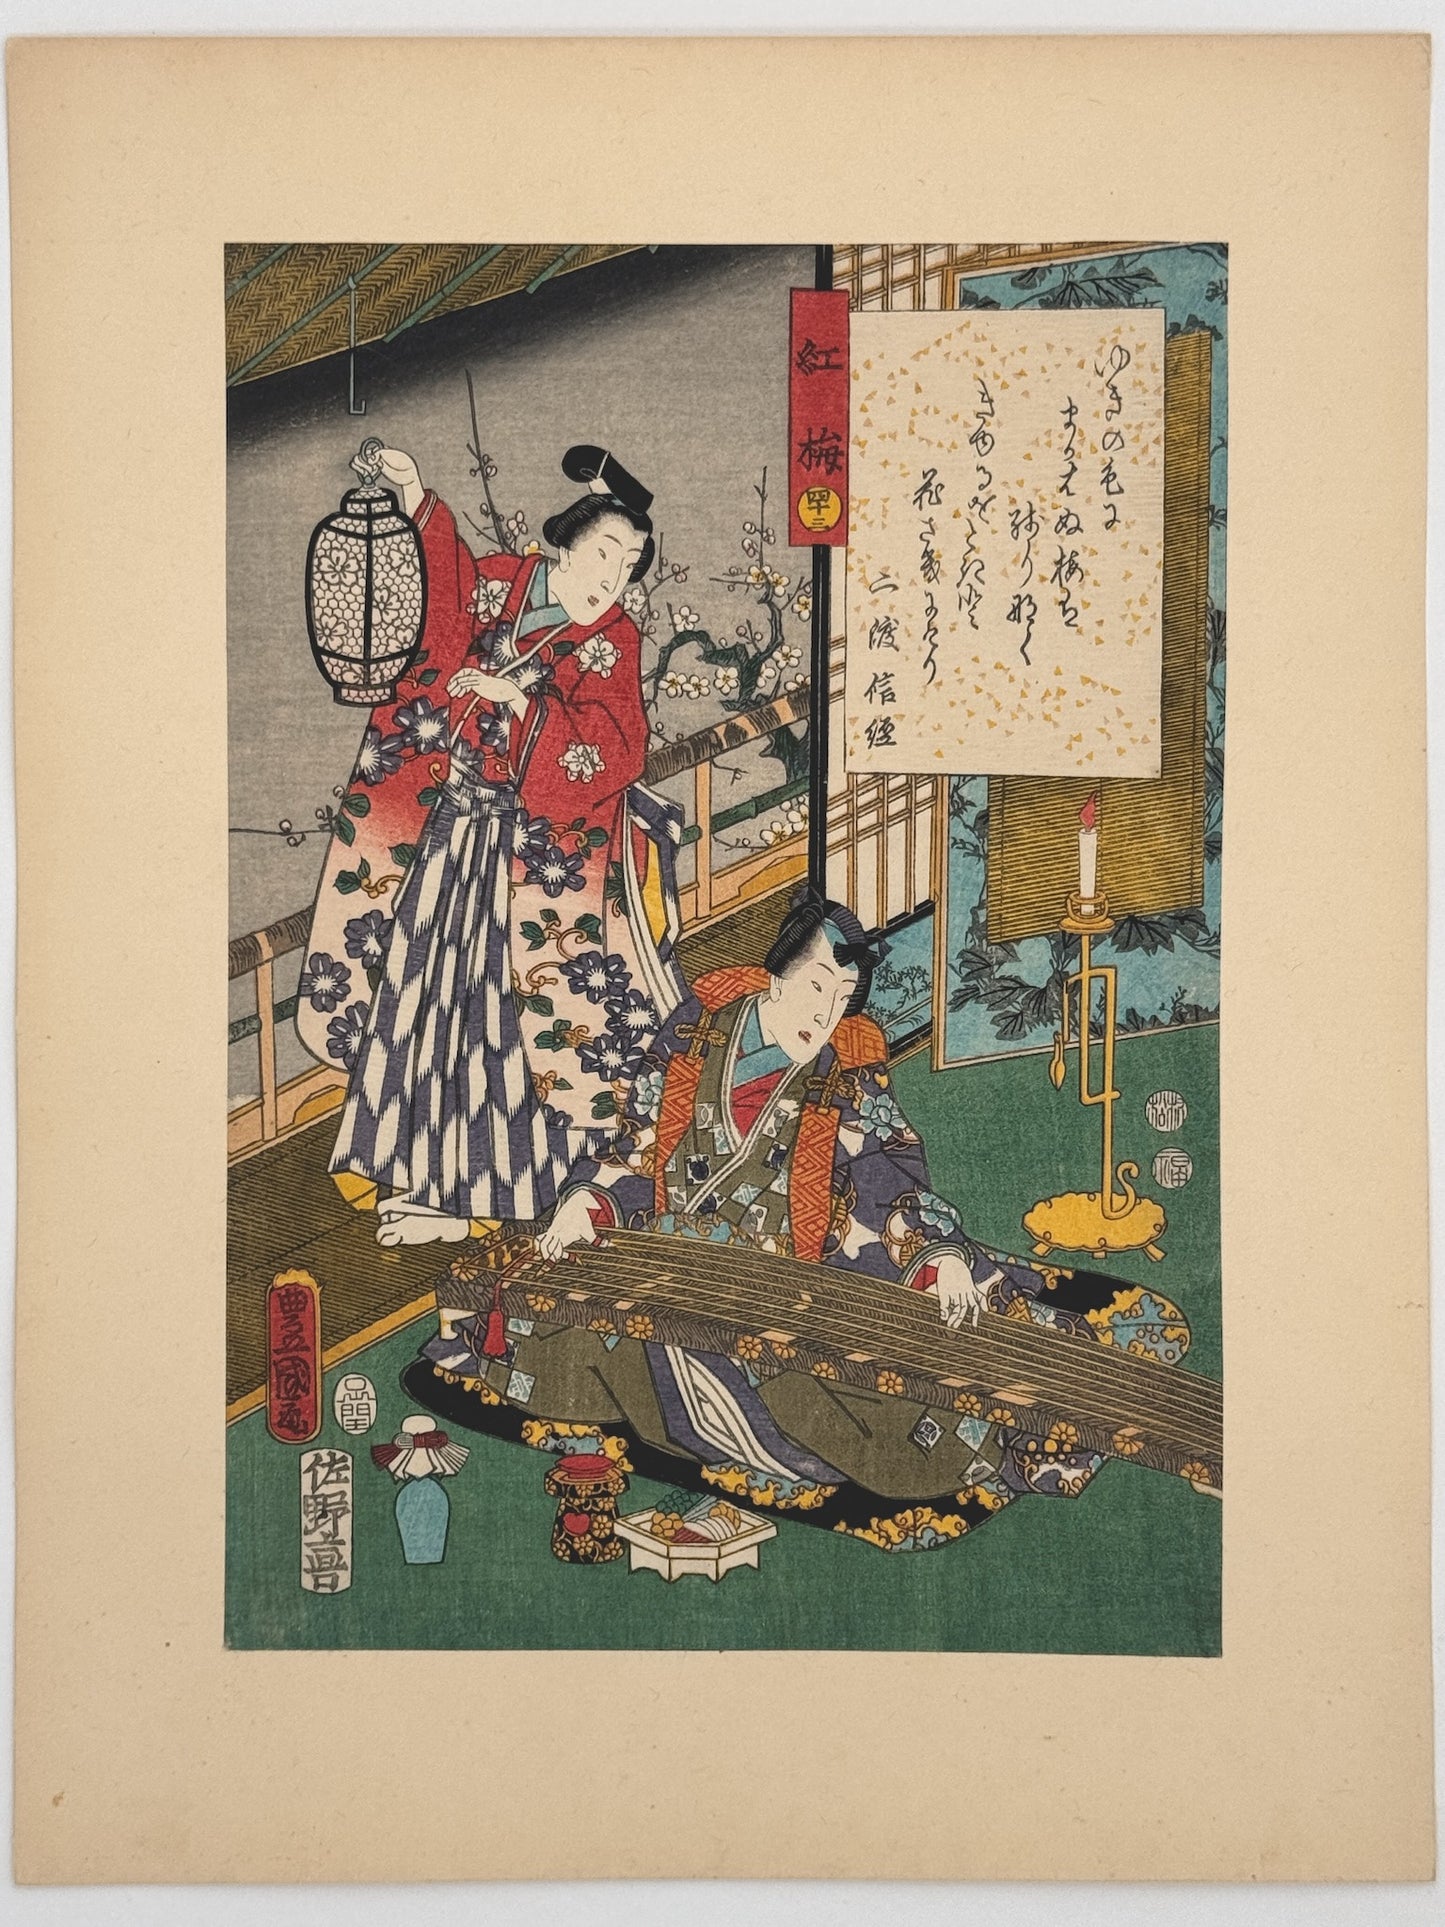 Estampe Japonaise de Kunisada | série du Genji moderne | Chapitre 43 : le prunier rouge printemps prunier en fleur et koto